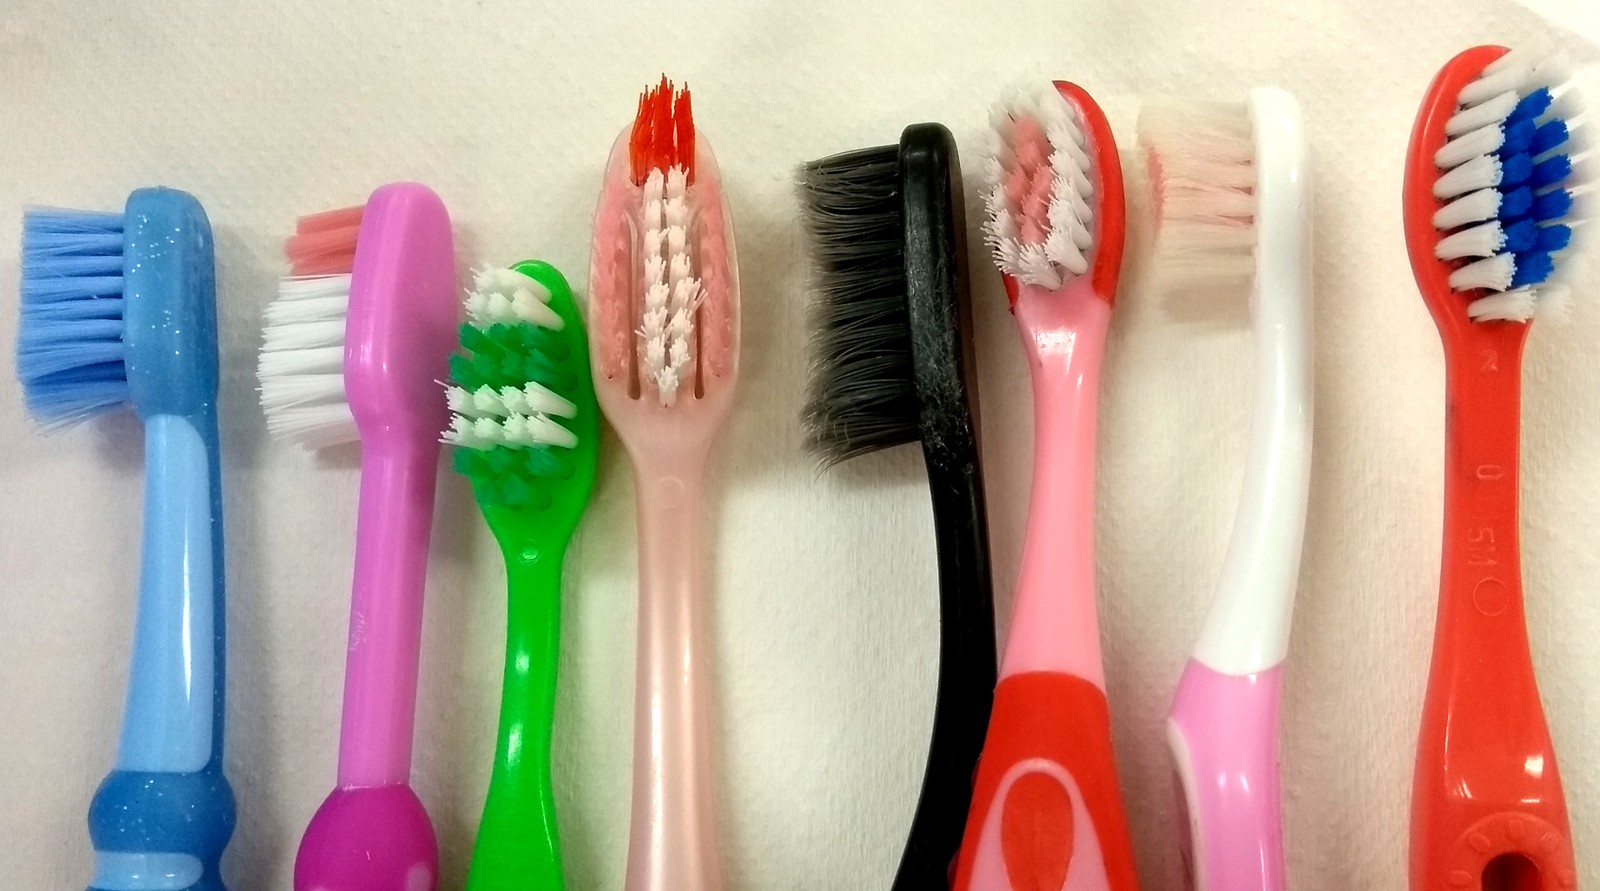 Escovas de dente usadas foram analisadas na pesquisa feita em Campinas (Foto: Patrícia Teixeira/G1)